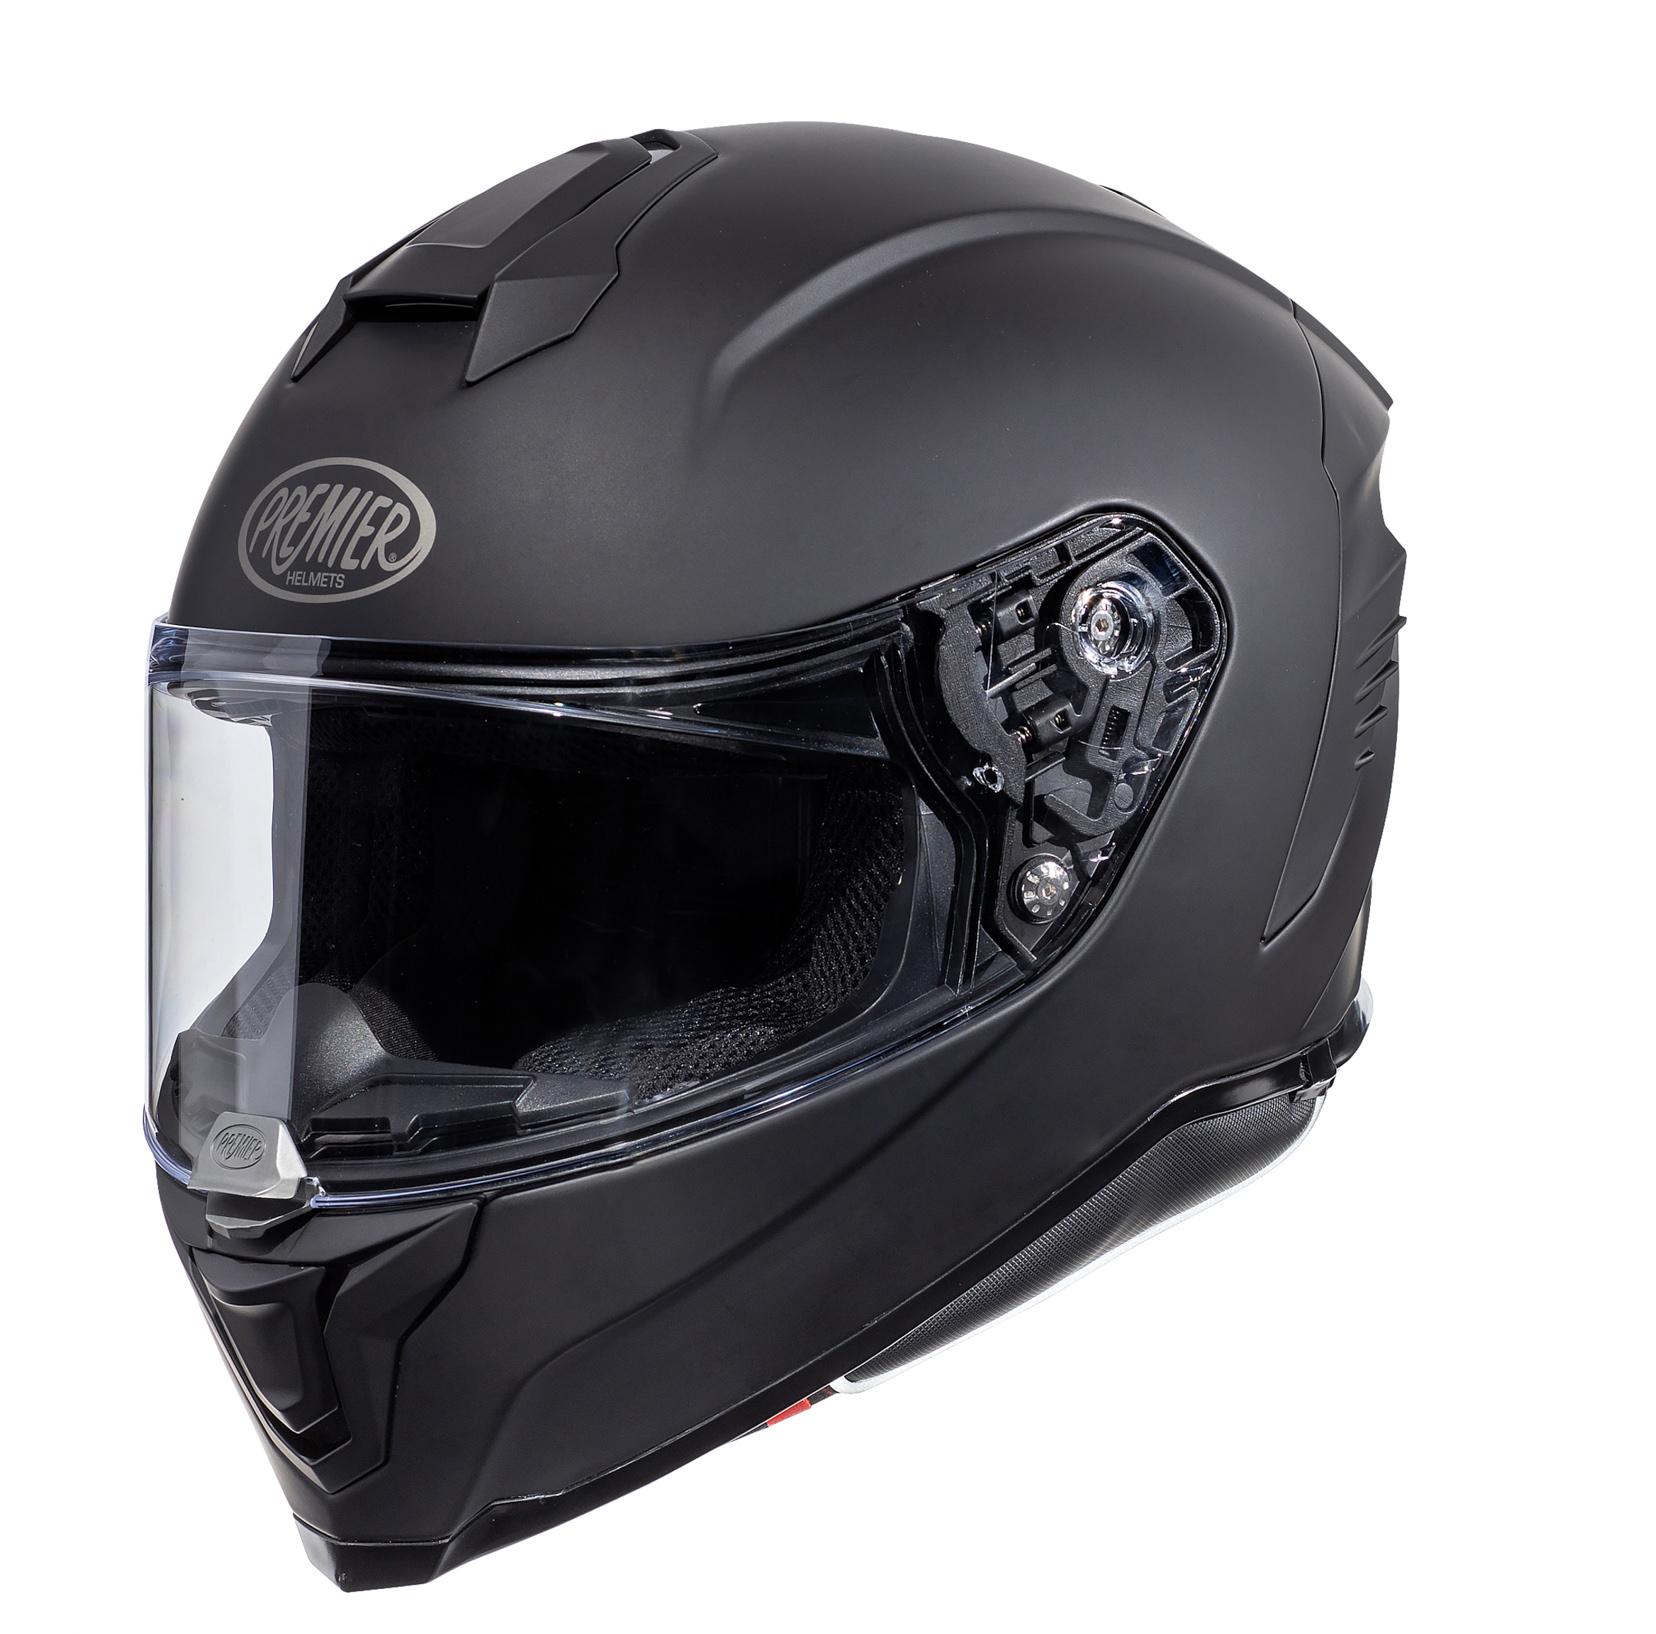 Premier Hyper Full Face Motorcycle Helmet - Matt Black, M